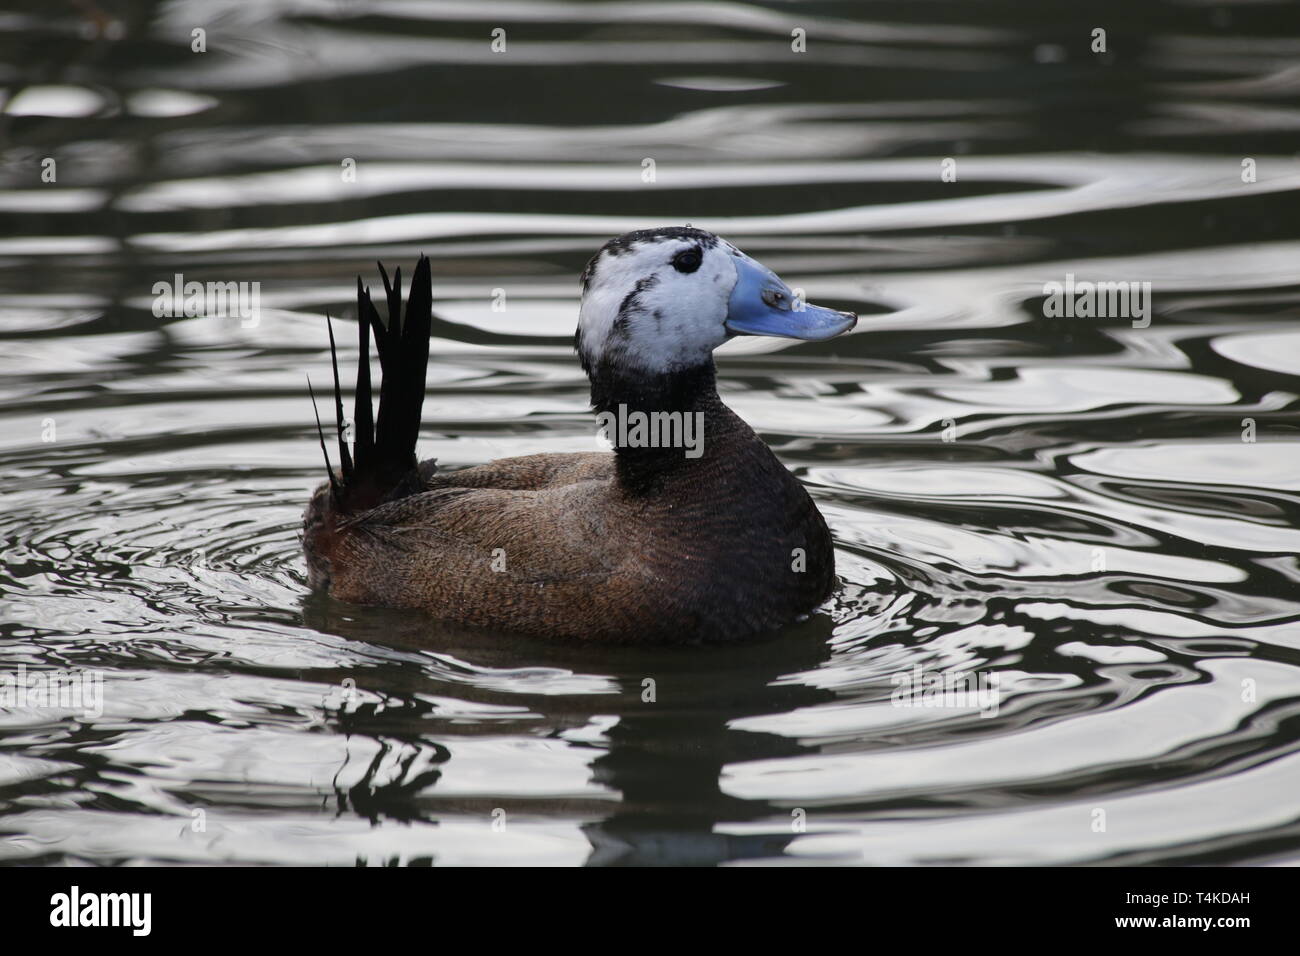 Blue-billed duck Schwimmen im Teich, WWT London Wetland Trust, GB. Stockfoto